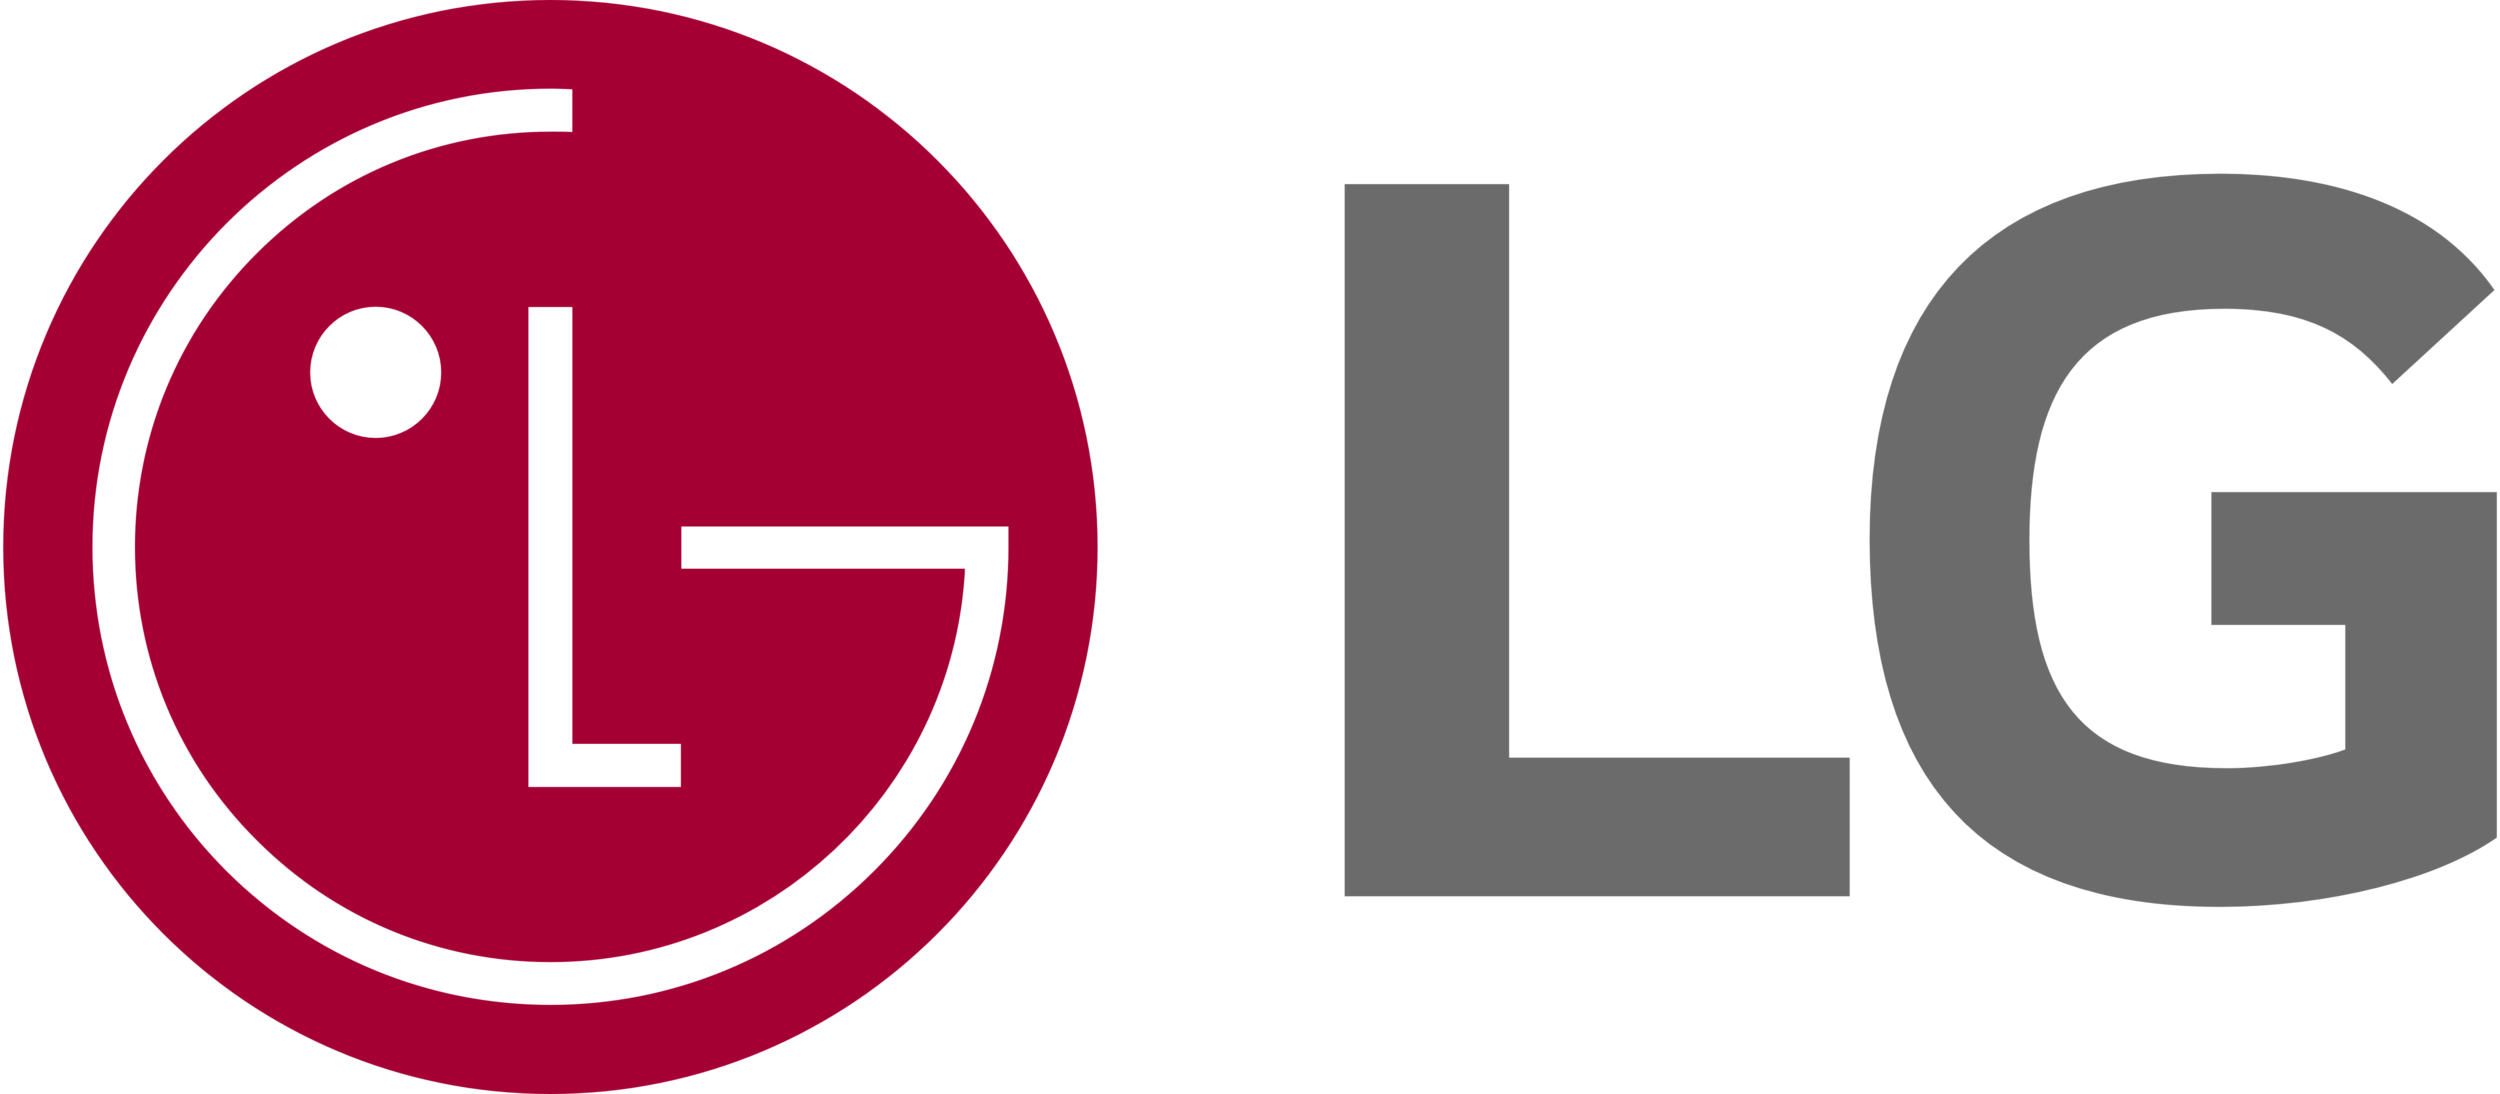 LG_logo_logotype_emblem.png